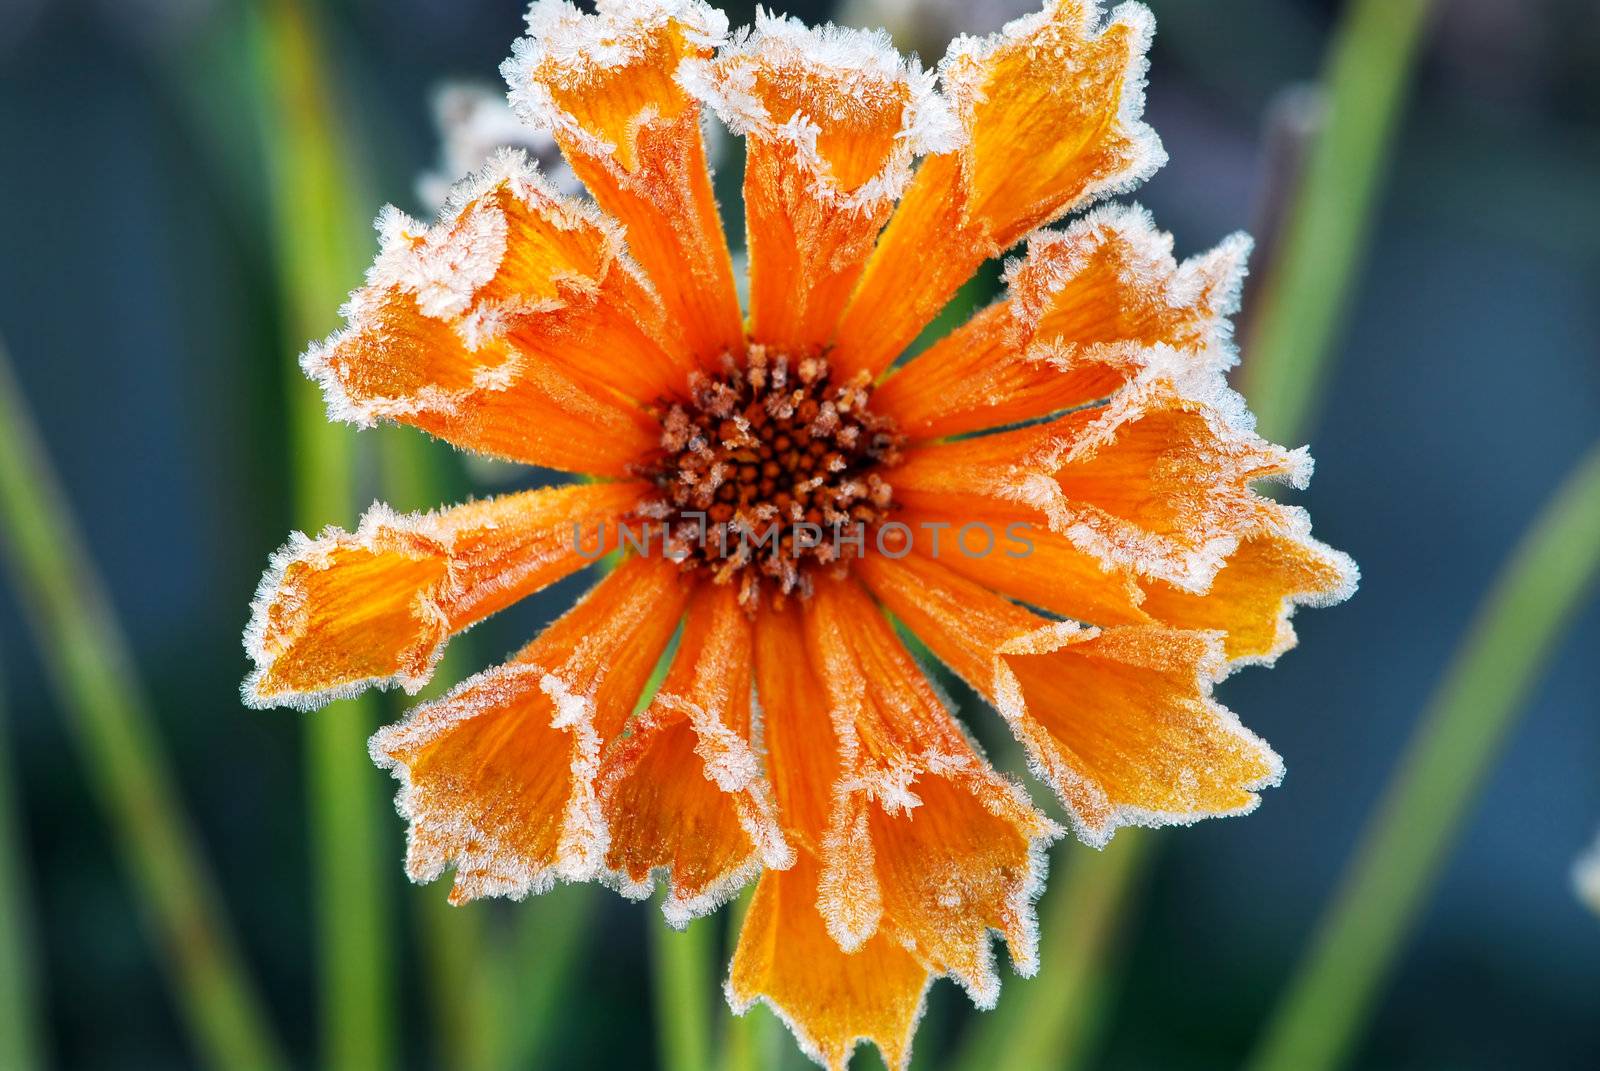 Frosty flower by elenathewise